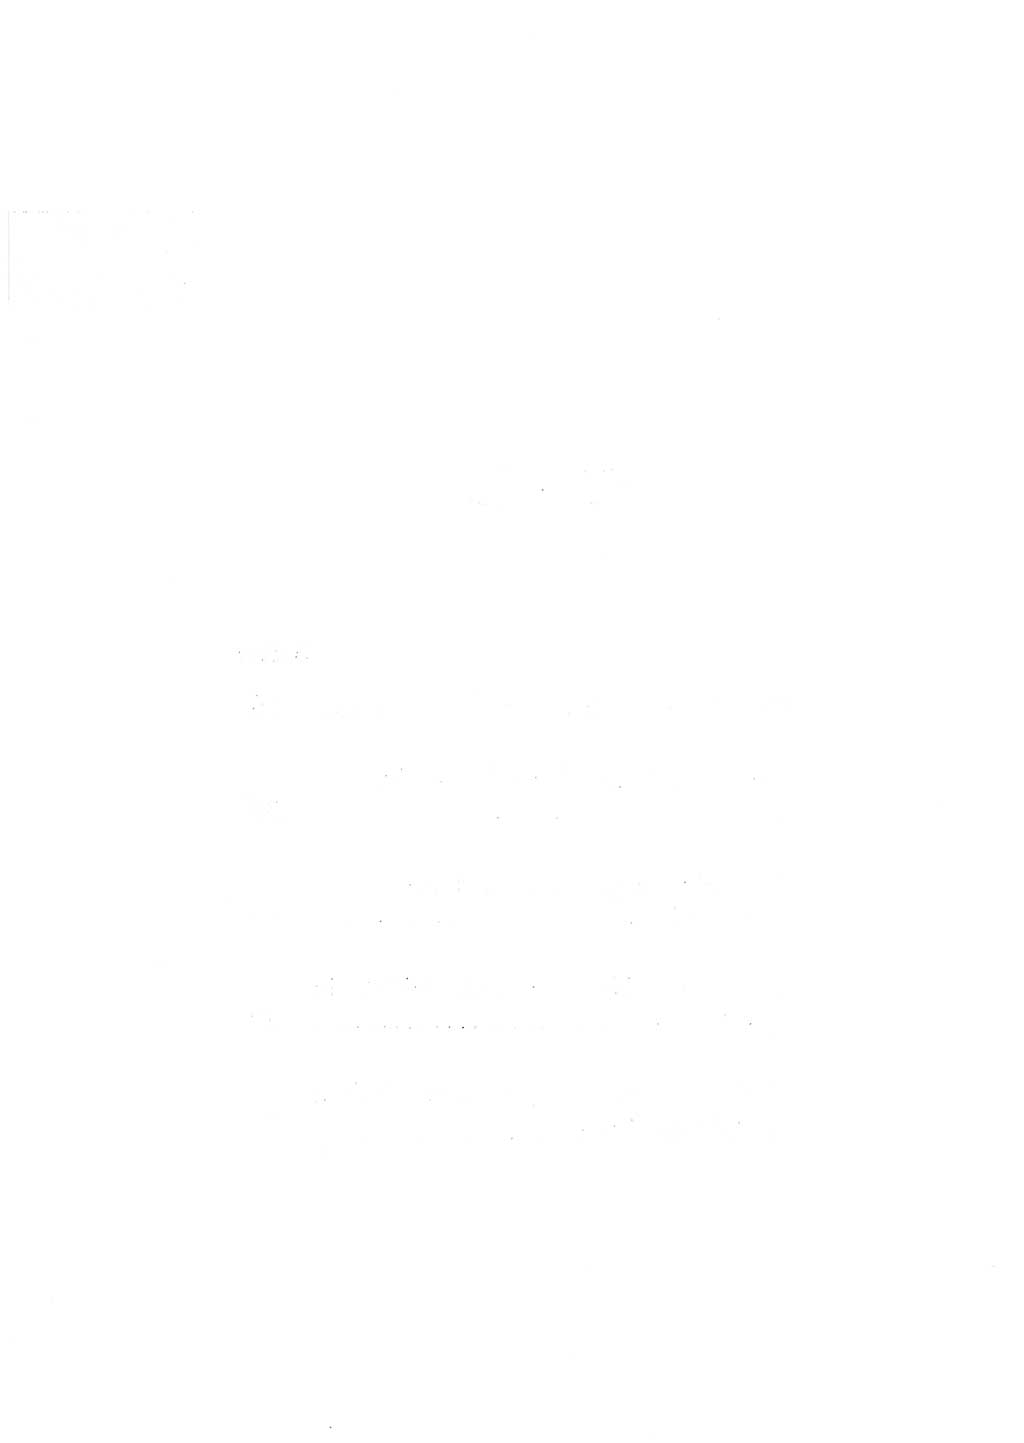 Katalog des Unrechts, Untersuchungsausschuß Freiheitlicher Juristen (UfJ) [Bundesrepublik Deutschland (BRD)] 1956, Seite 34 (Kat. UnR. UfJ BRD 1956, S. 34)